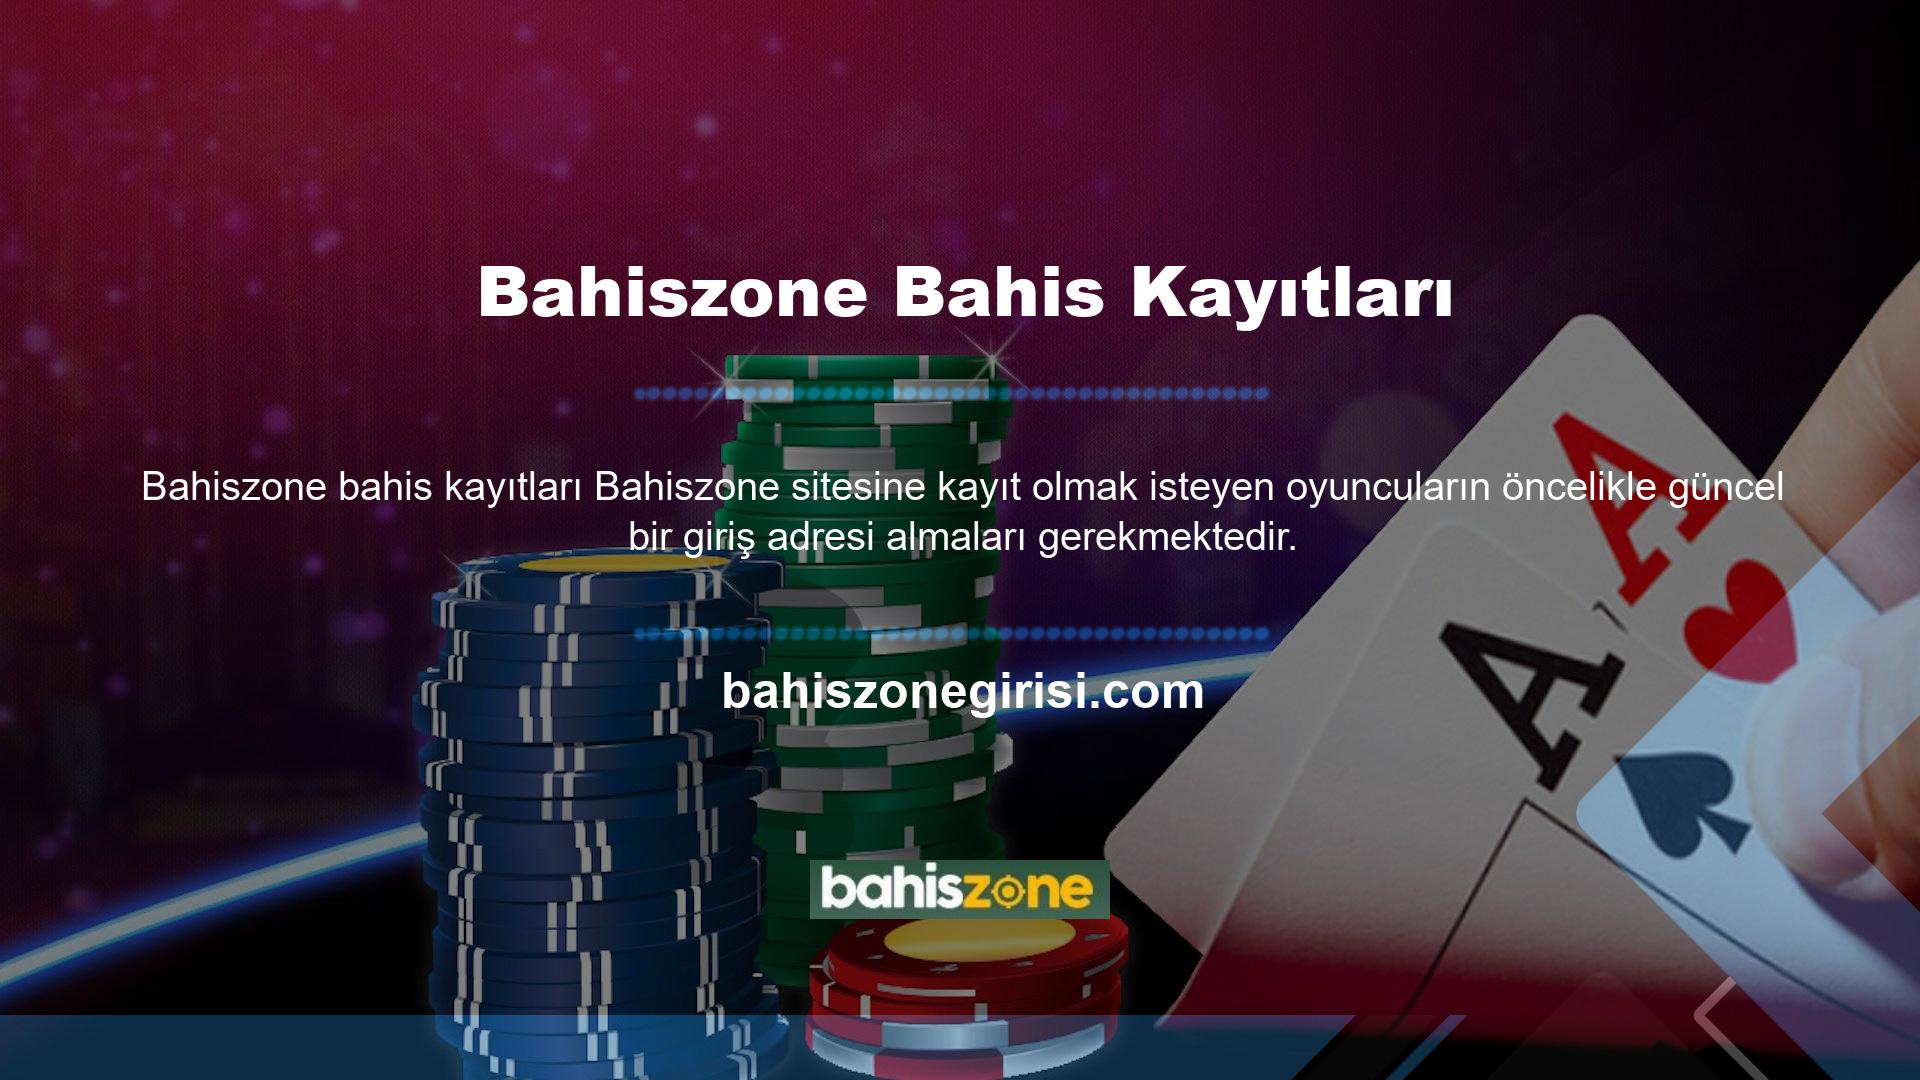 Online casino siteleri Türkiye'de yasal olarak faaliyet göstermemektedir ve site kullanıcılarının ve sitenin güvenliğini sağlamak için zaman zaman adresler değişmektedir